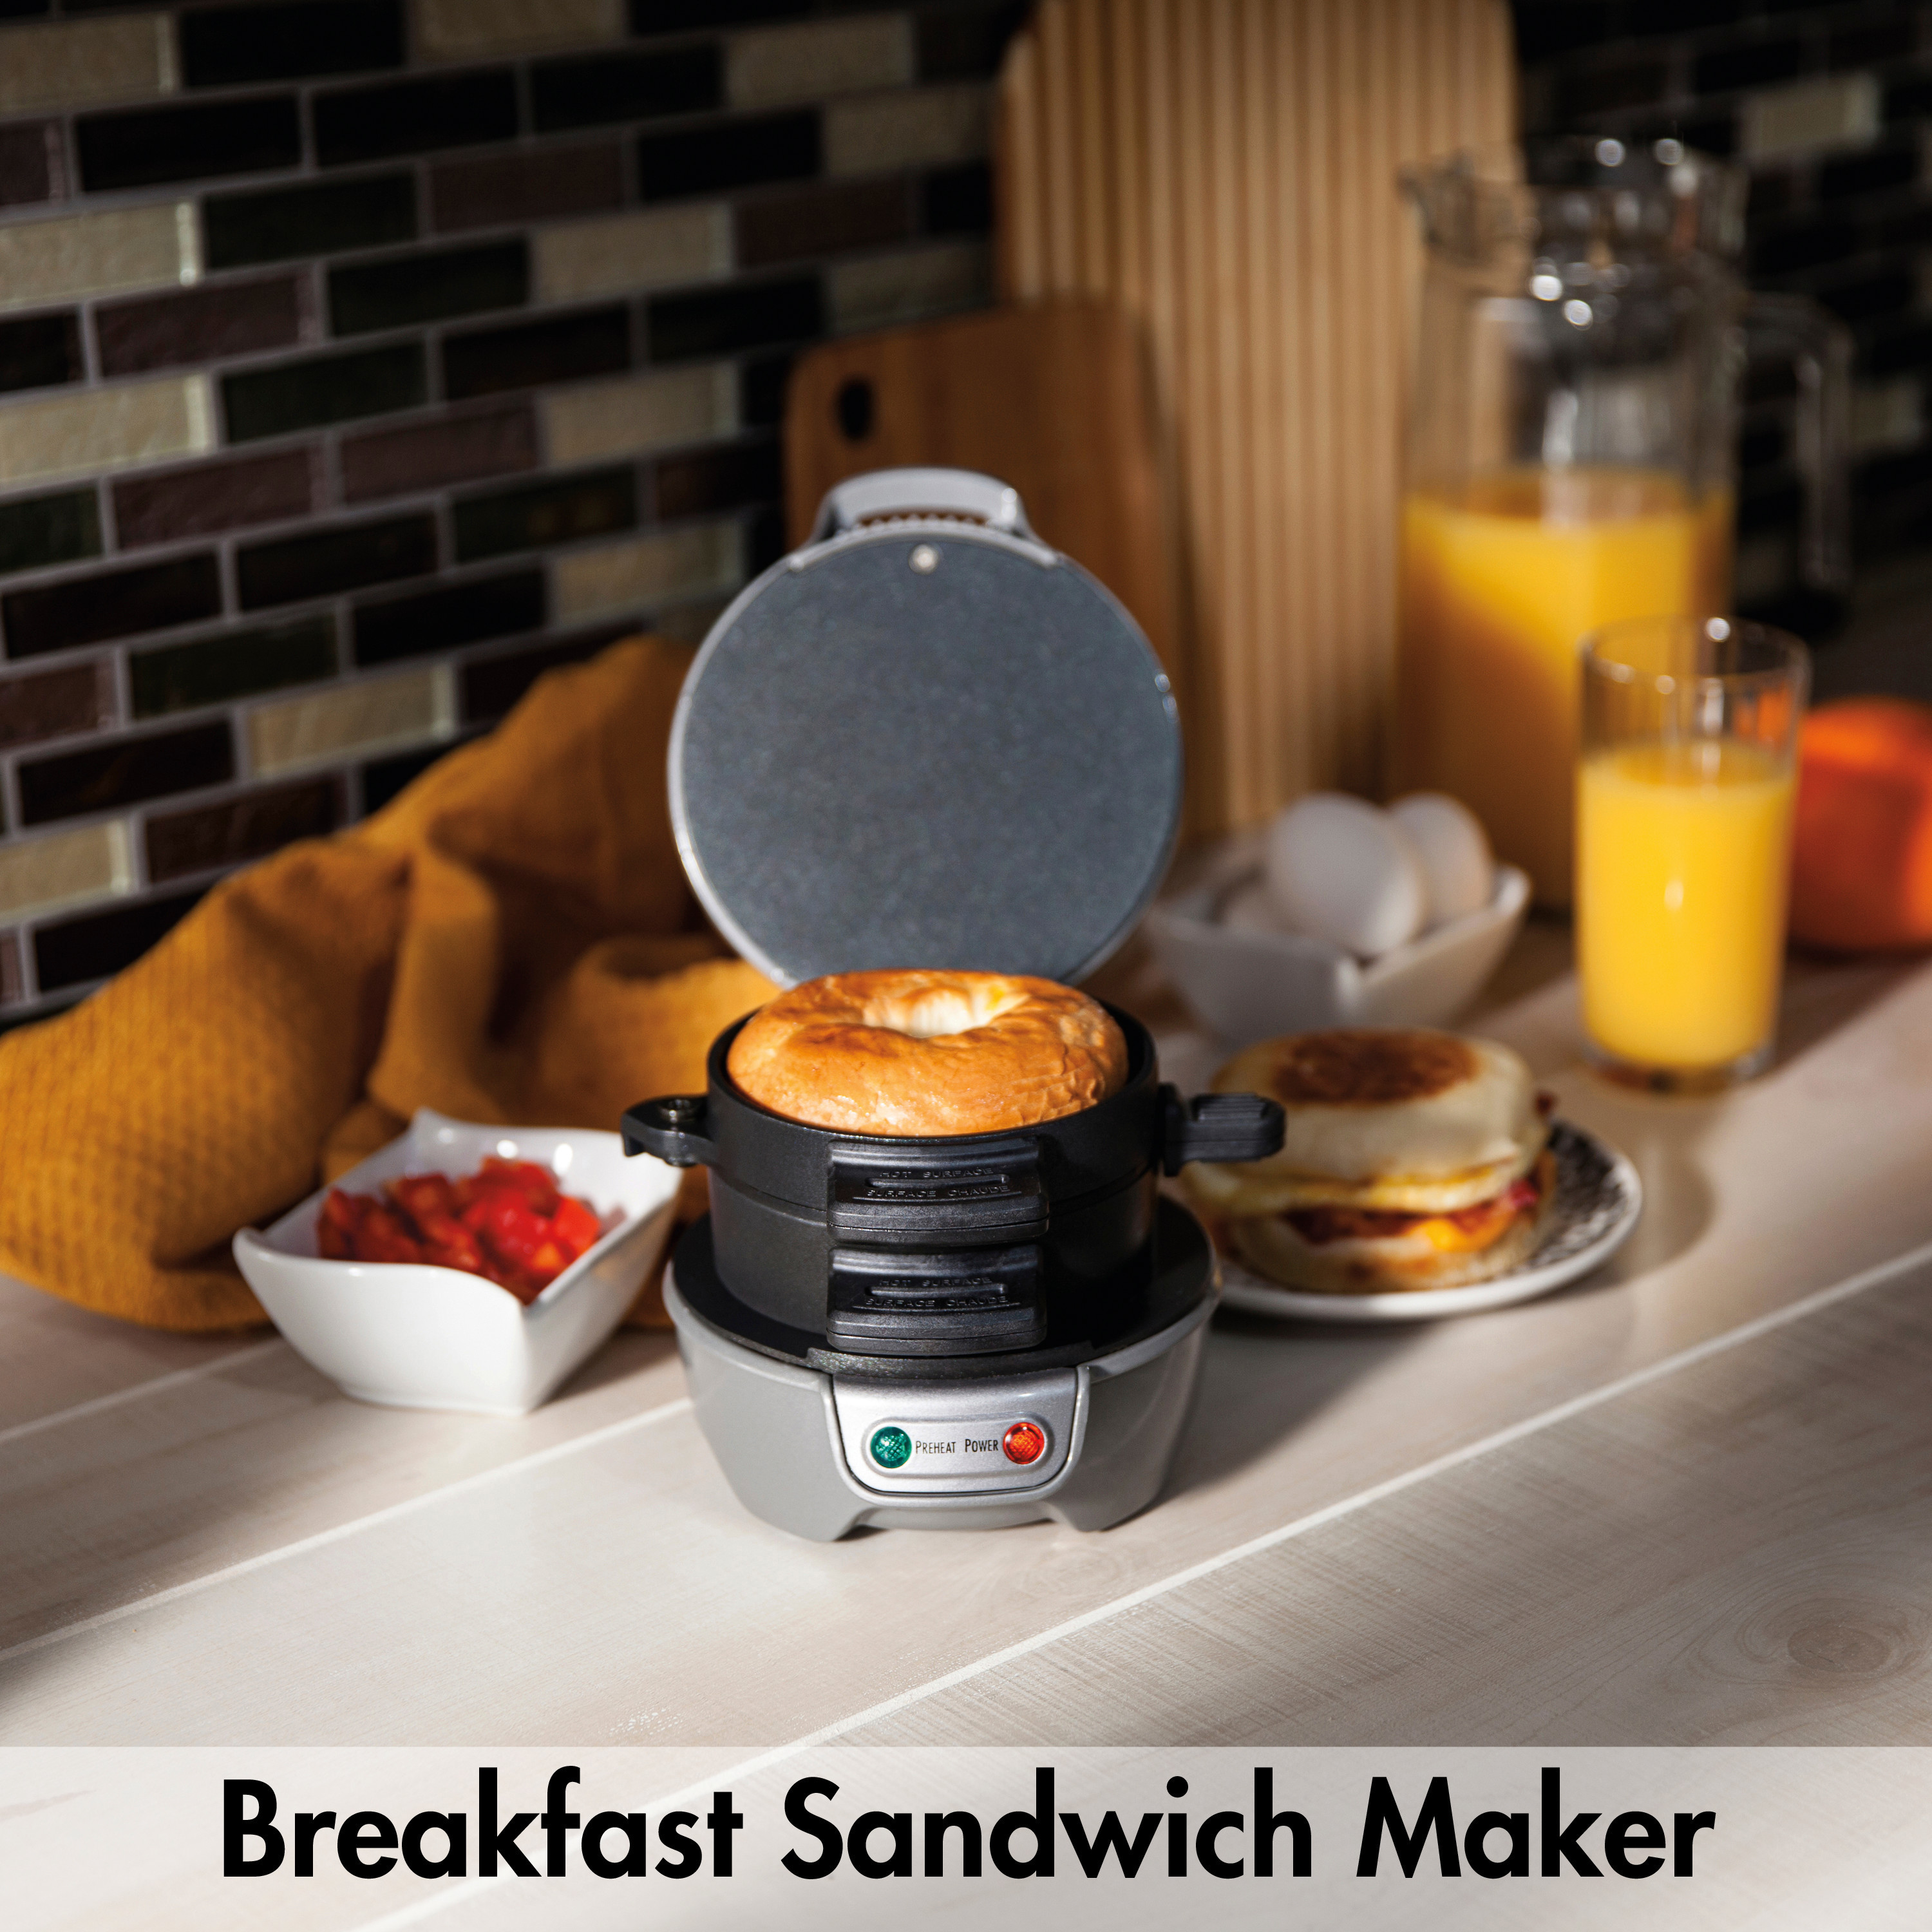 Hamilton Beach Breakfast Sandwich Maker Recipes
 Hamilton Beach Breakfast Sandwich Maker & Reviews